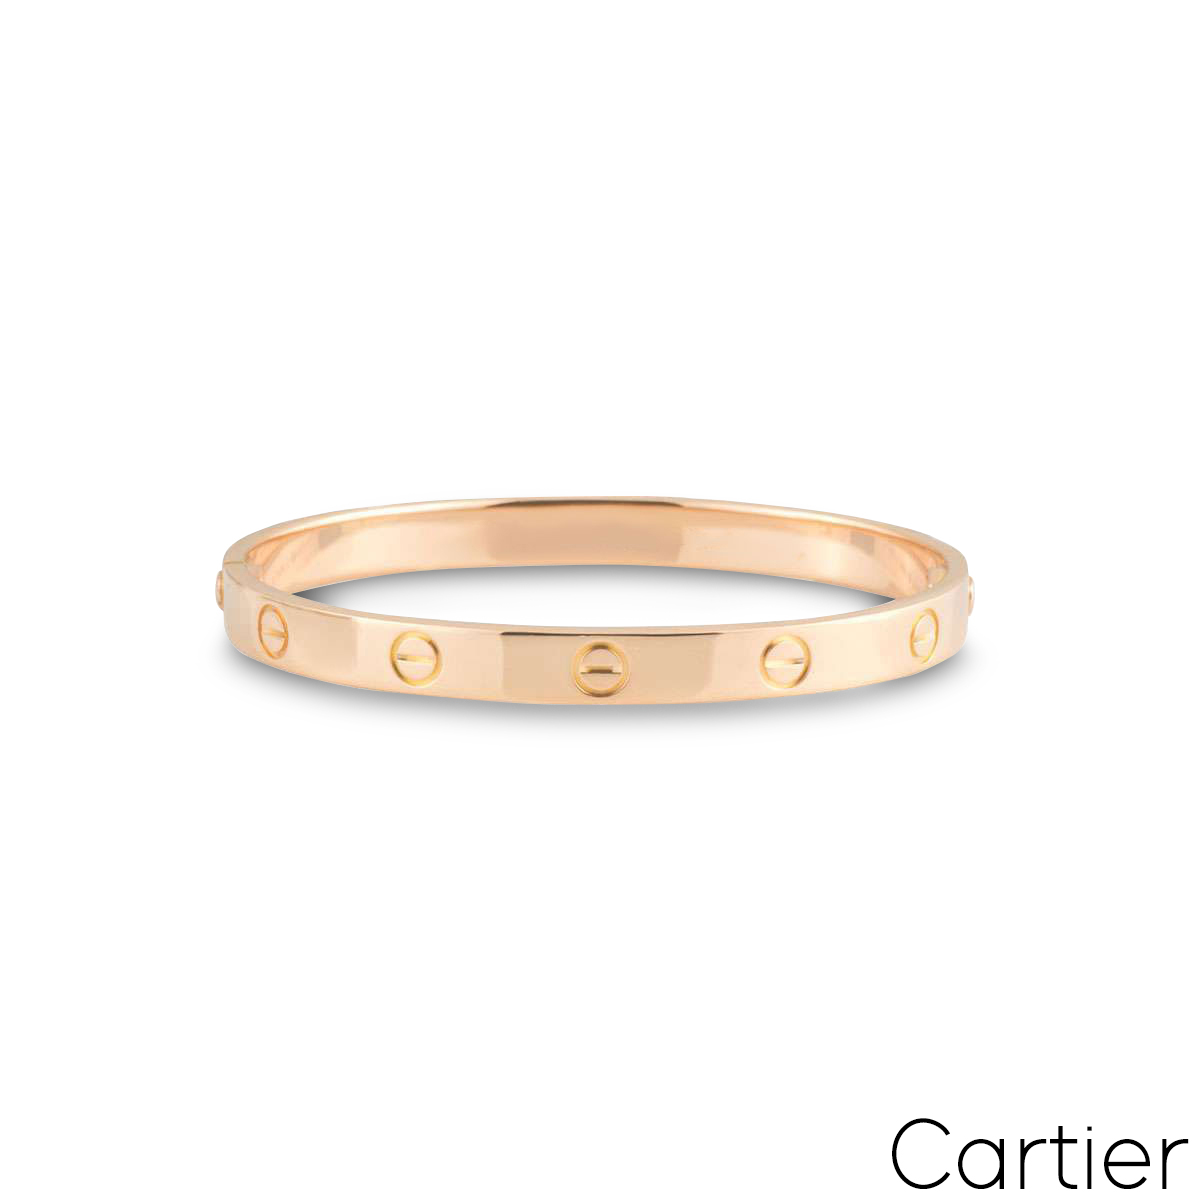 Cartier Rose Gold Plain Love Bracelet Size 20 B6035620